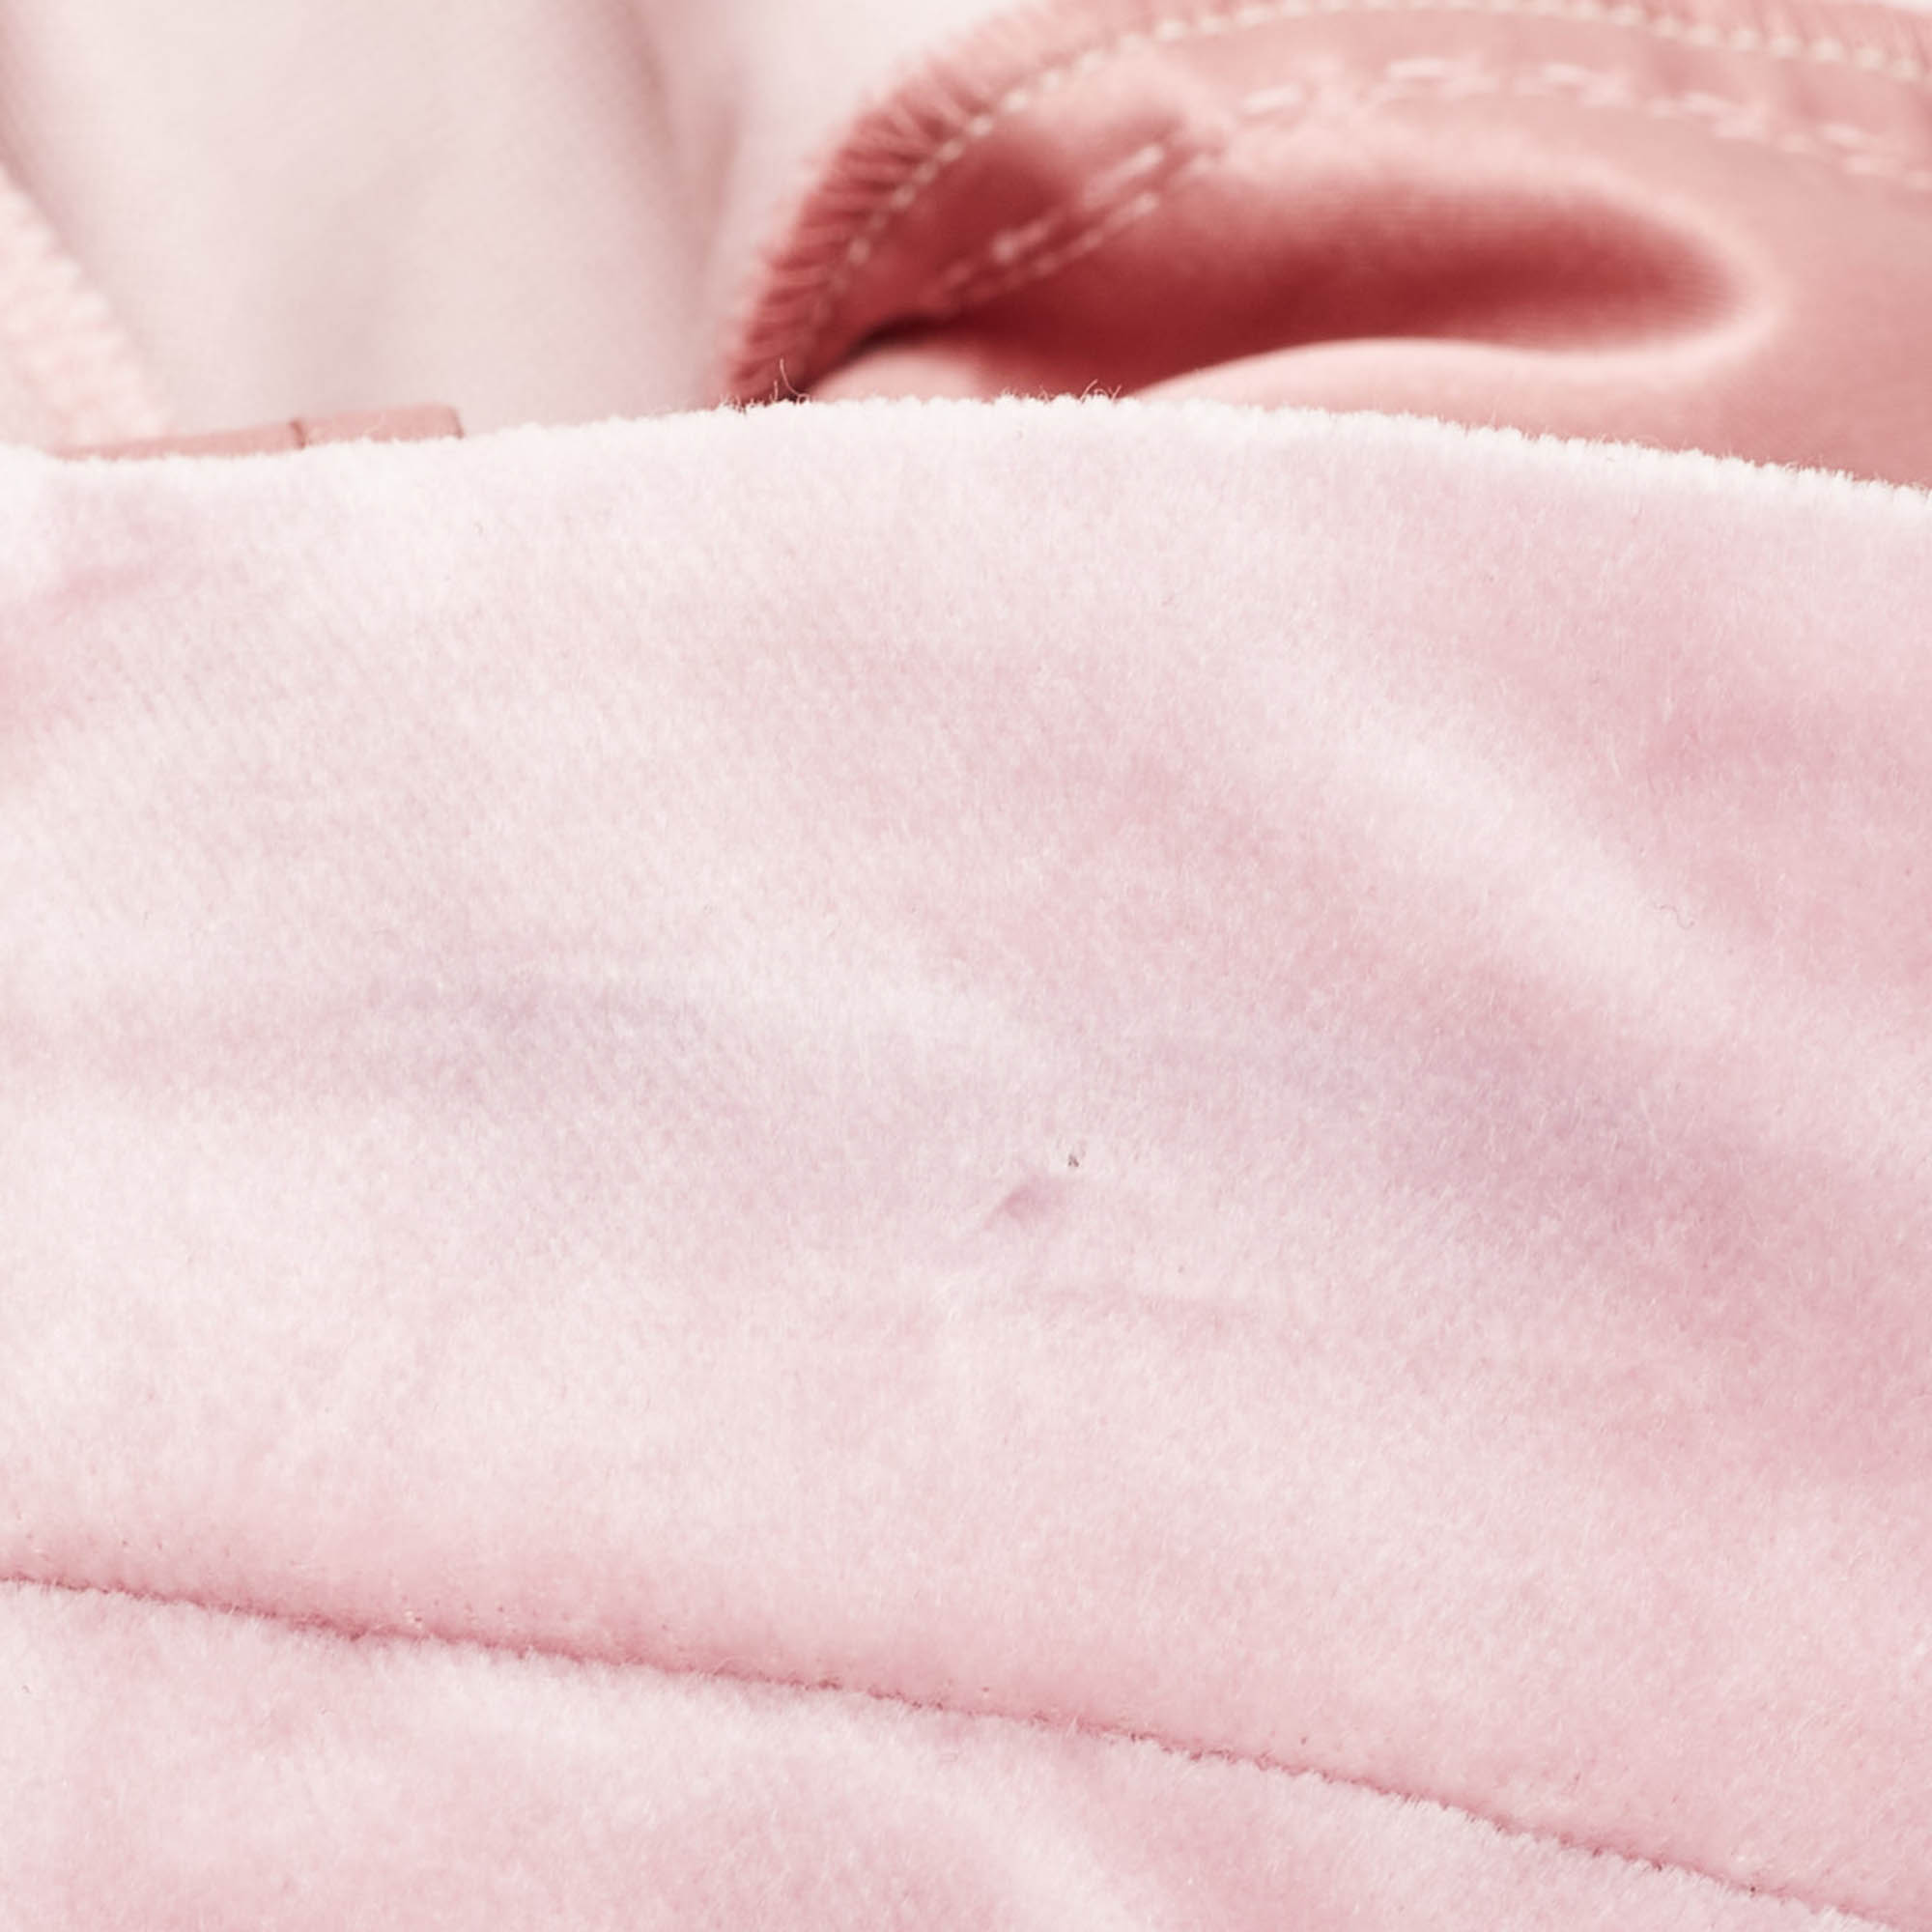 Dolce & Gabbana Pink Velvet Tapered Trousers M